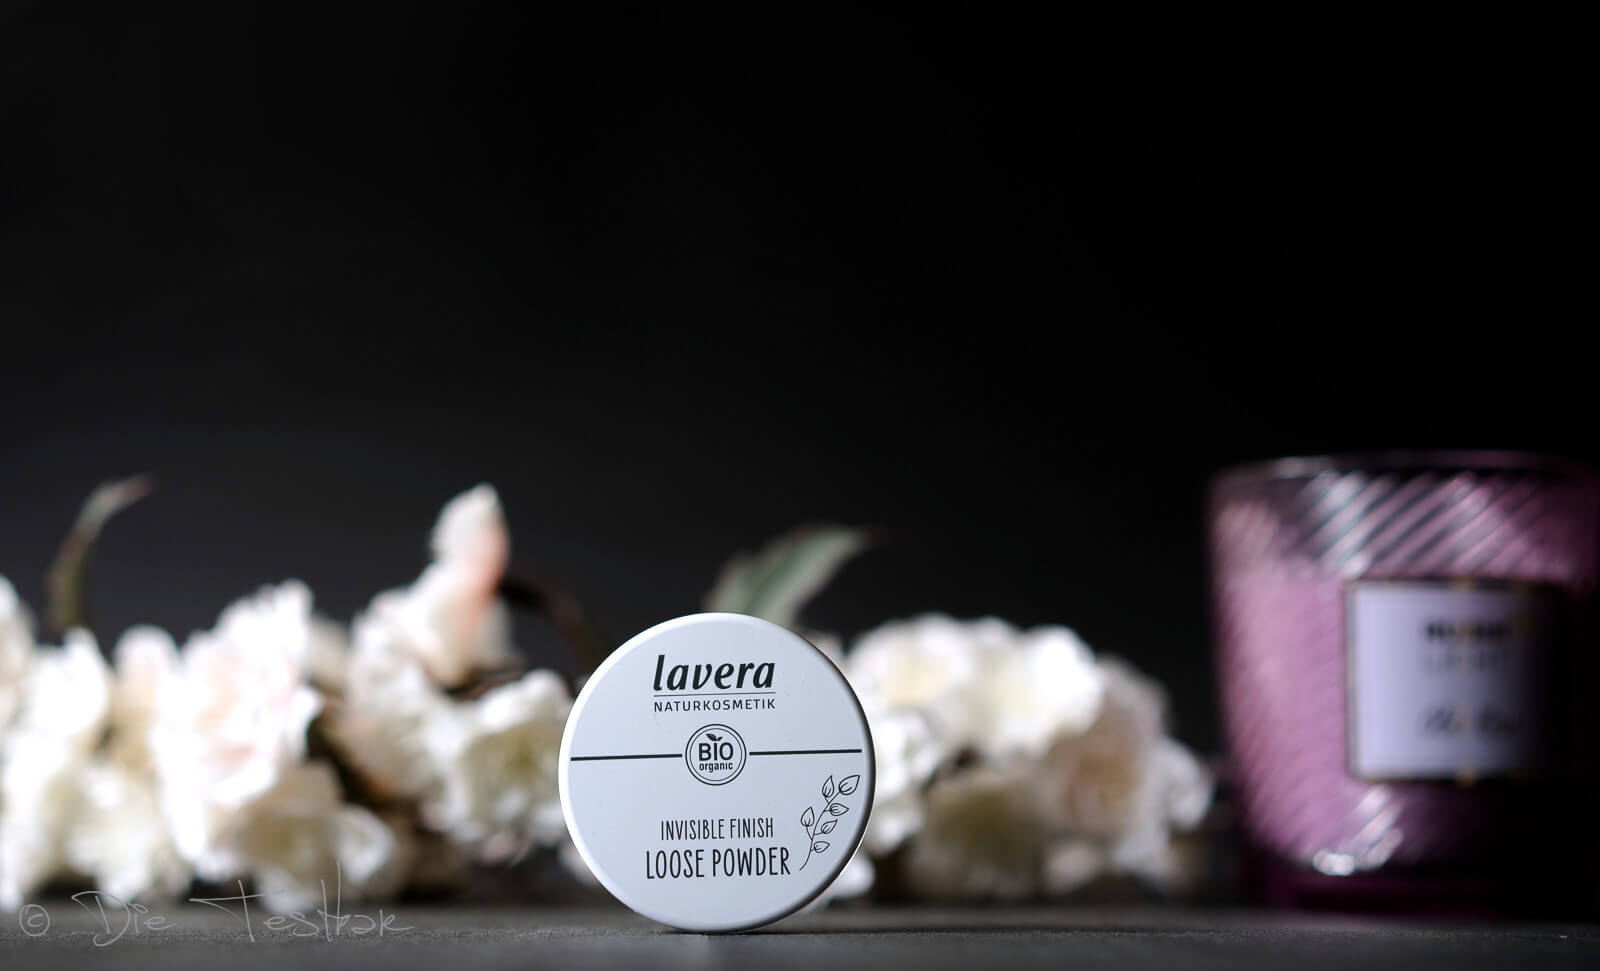 lavera - Dekorative Kosmetik - Neu im Sortiment - Bronzer, Rouge, Grundierung und Eyeshadows 1